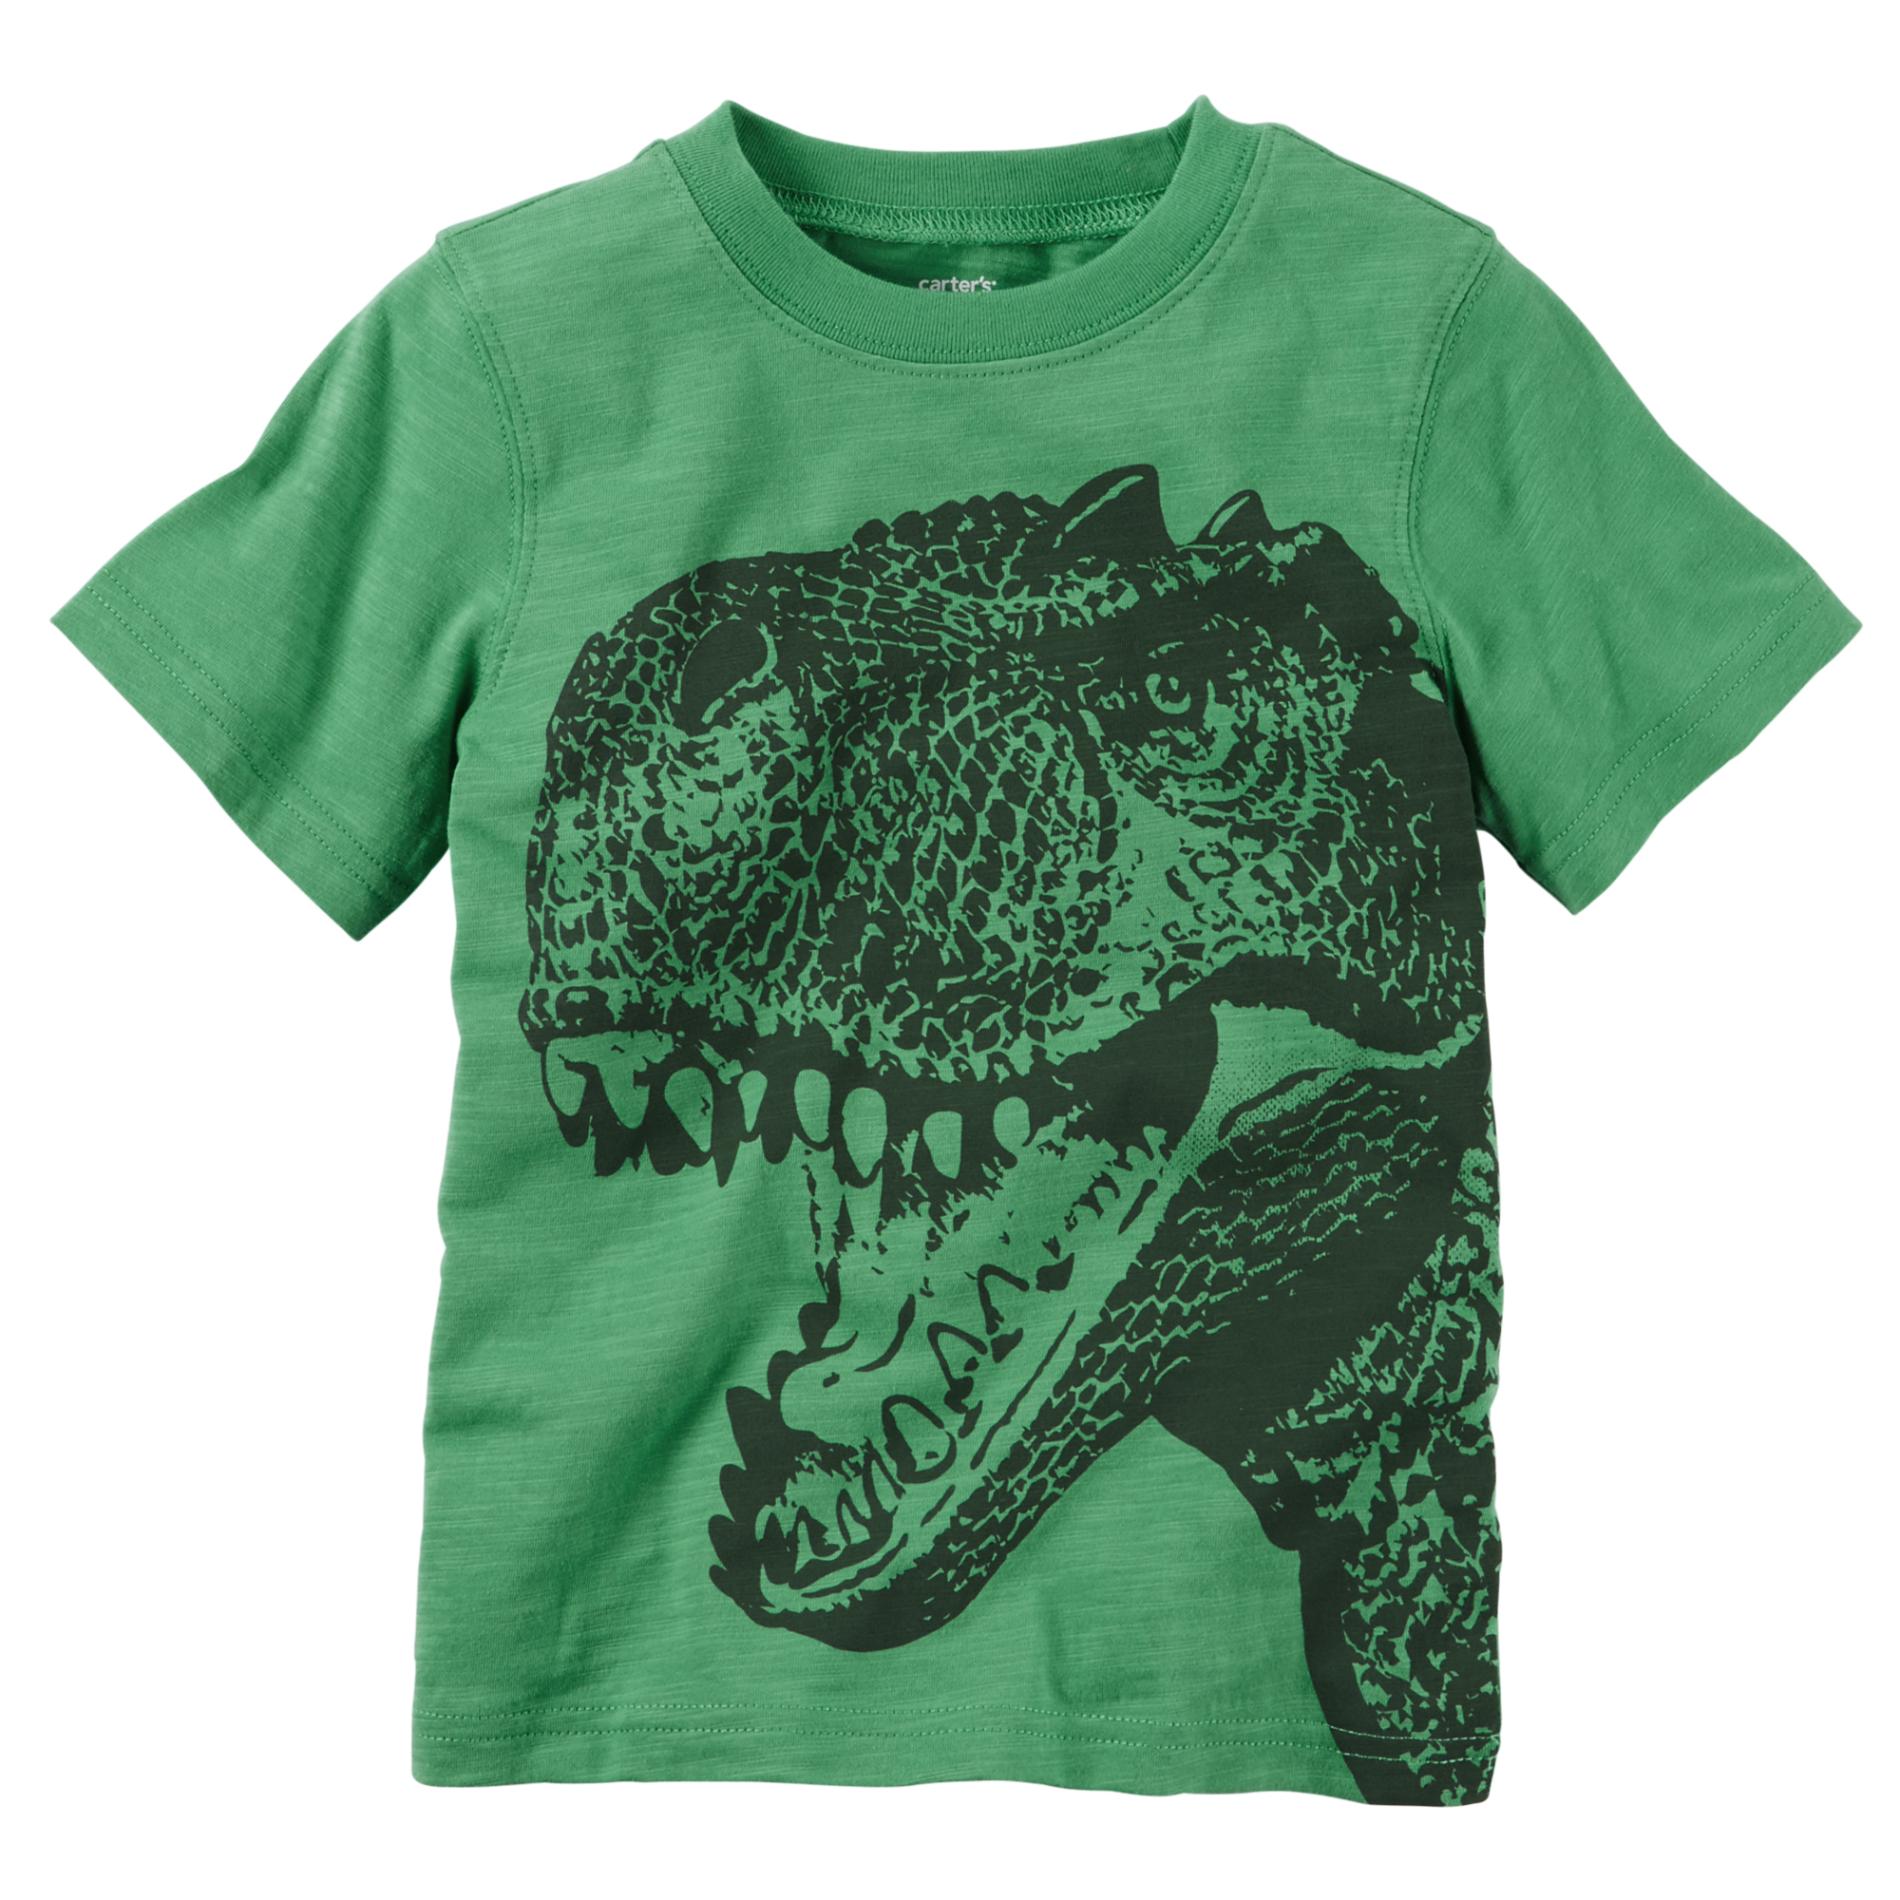 Carter's Toddler Boy's Graphic T-Shirt - T. Rex